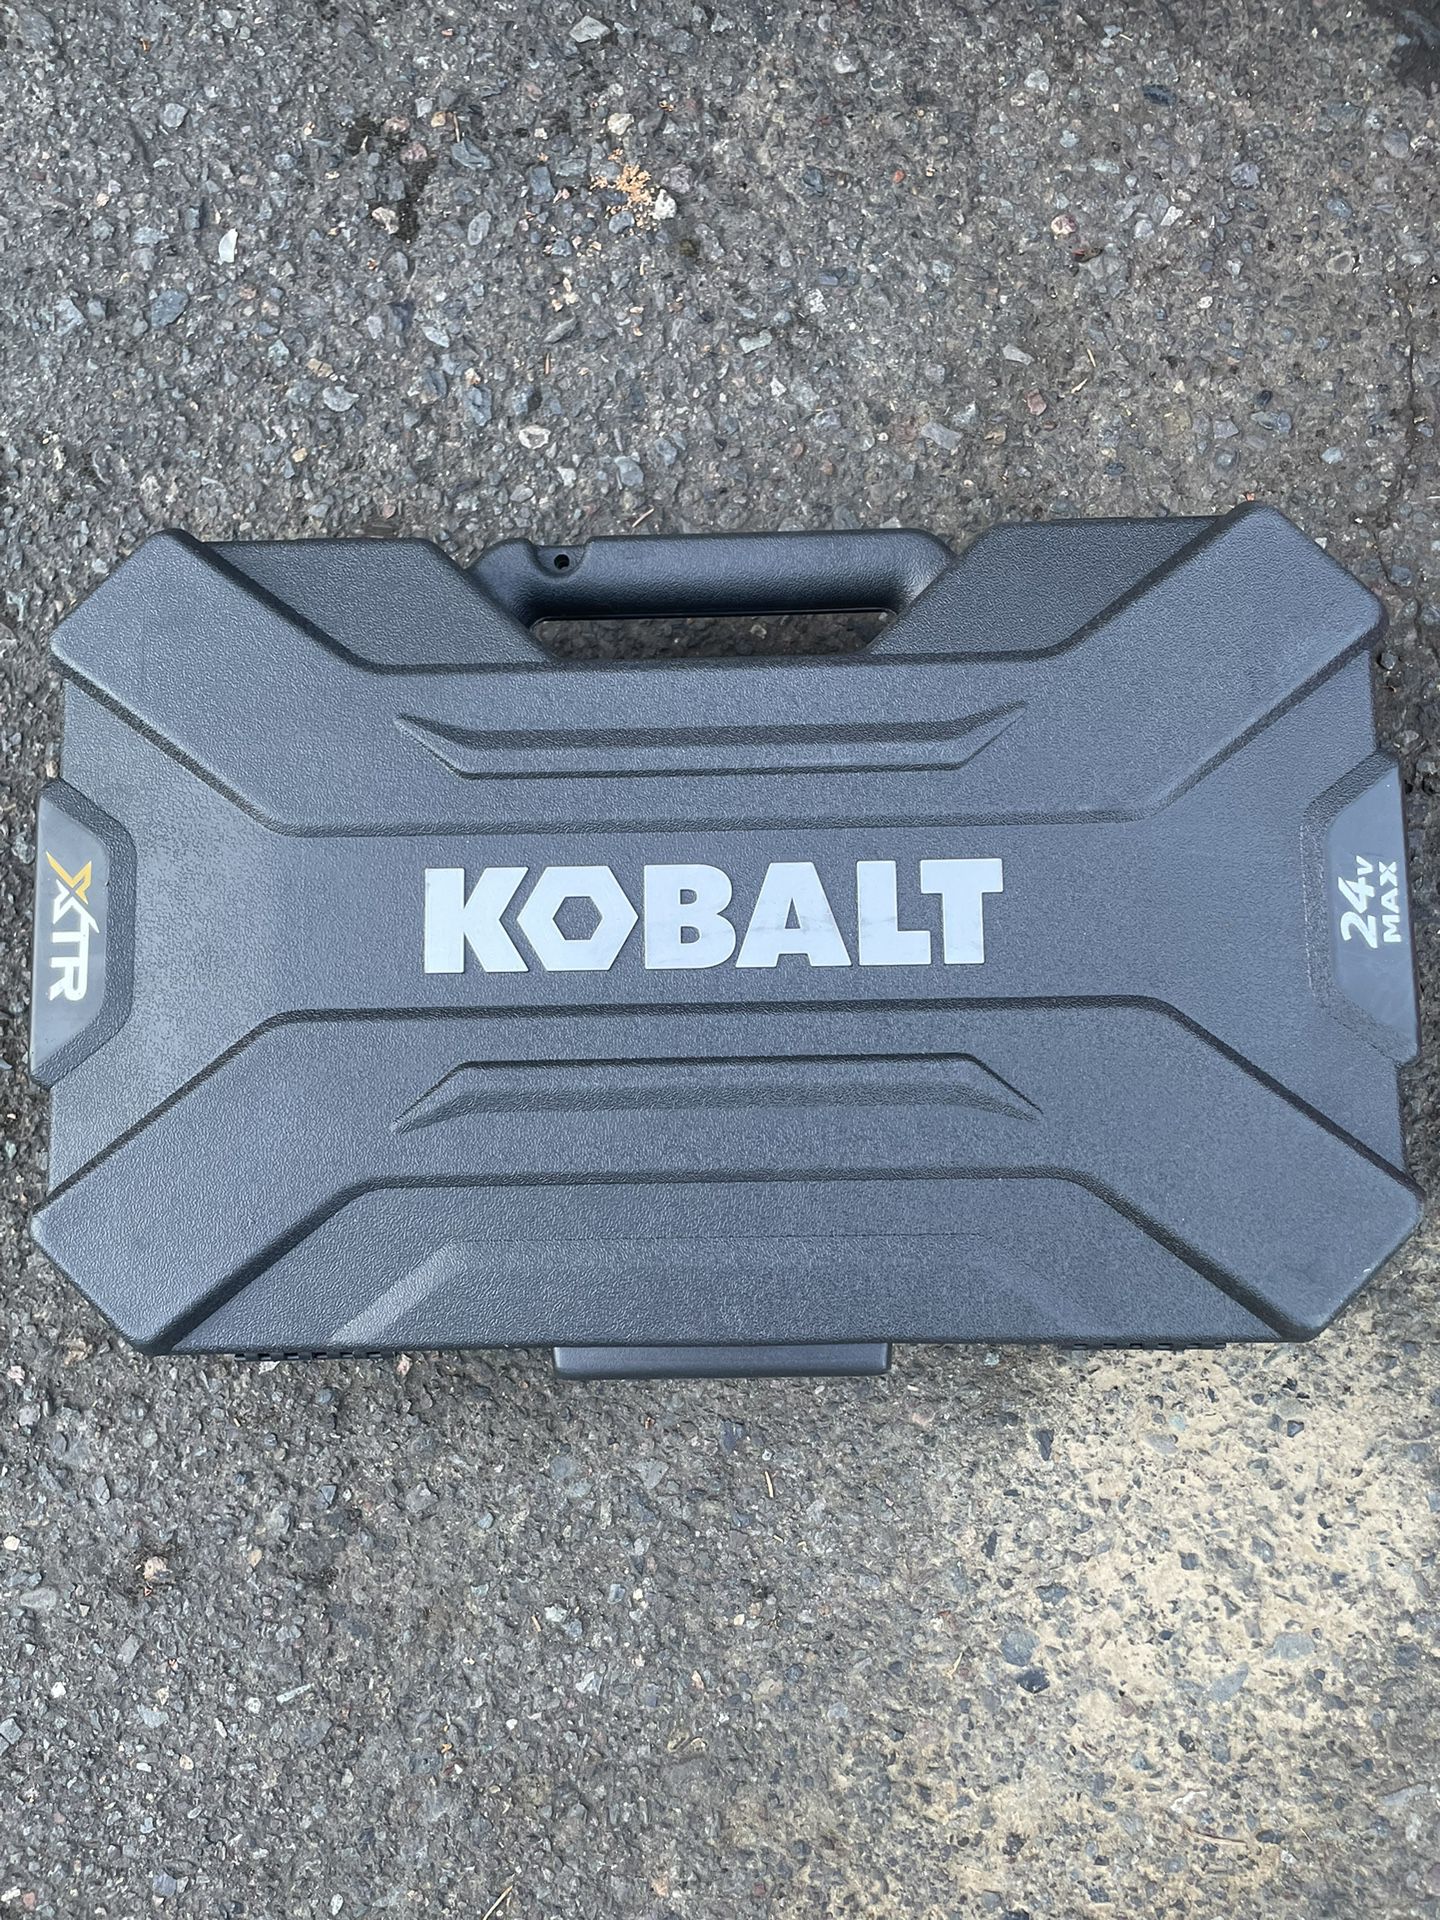 Kobalt 24v Max Impact Wrench Kit